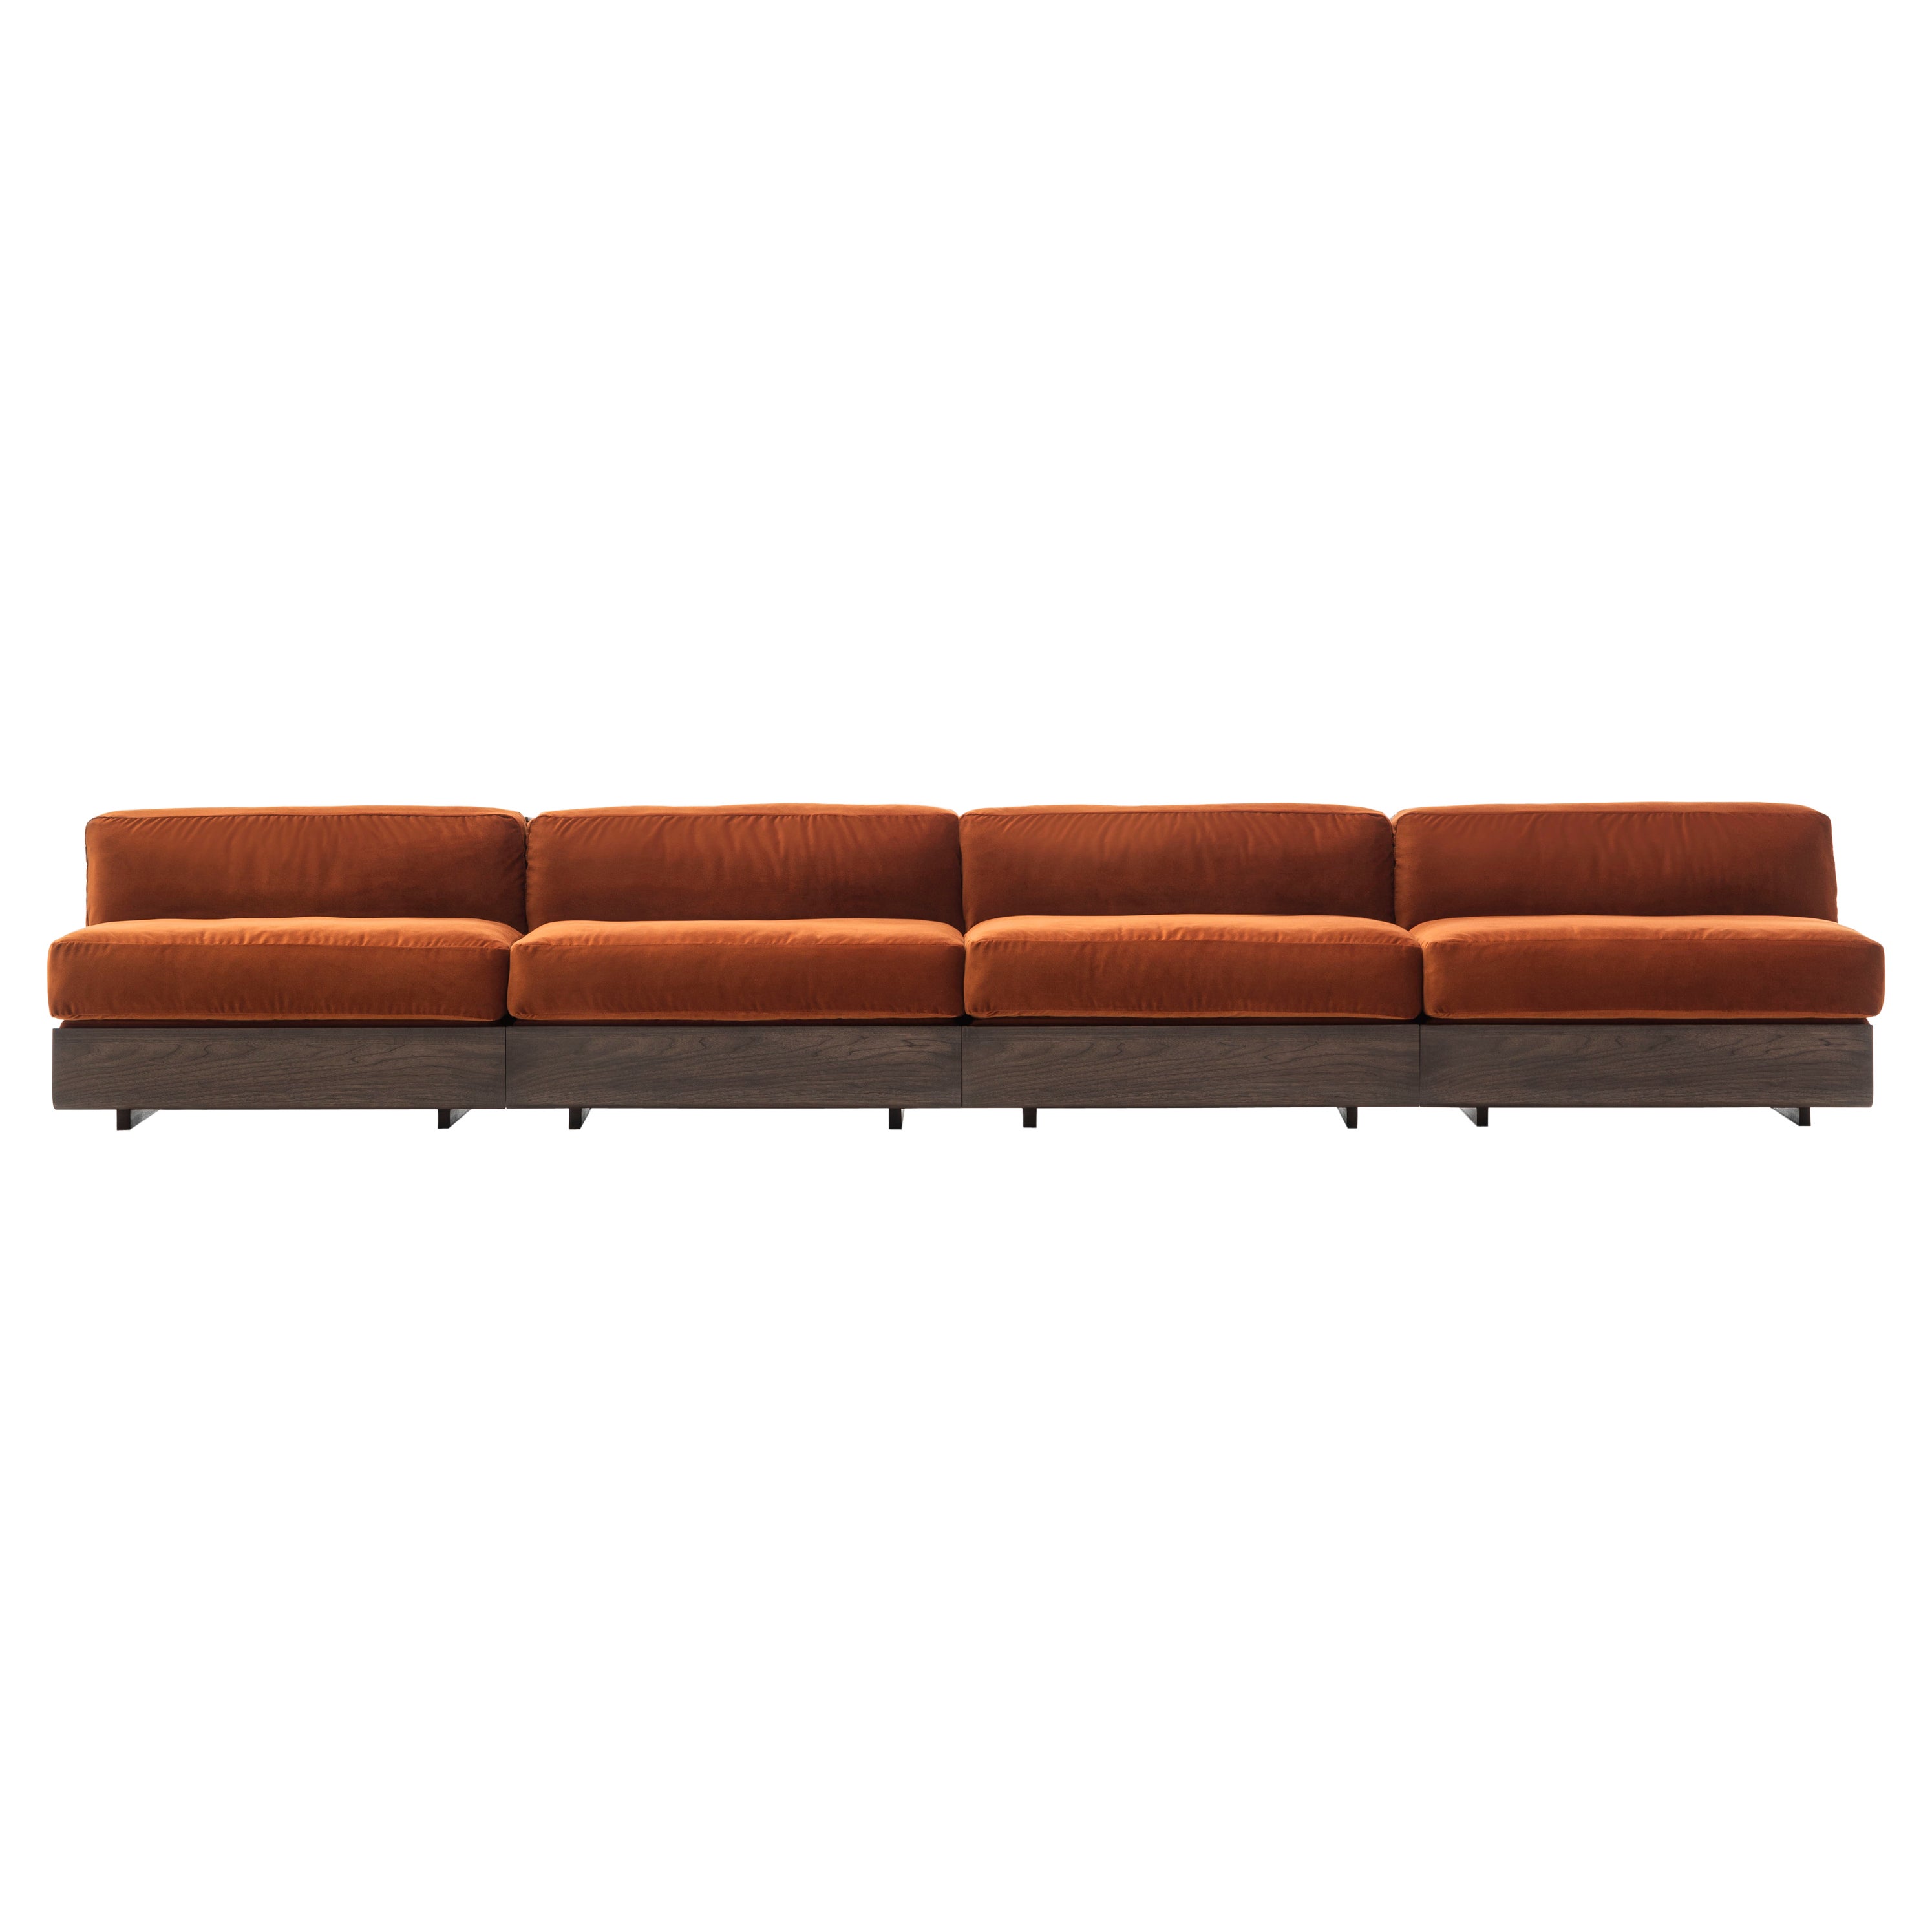 Acerbis Life Sofa in brauner Polsterung mit dunkel gebeiztem Nussbaumgestell